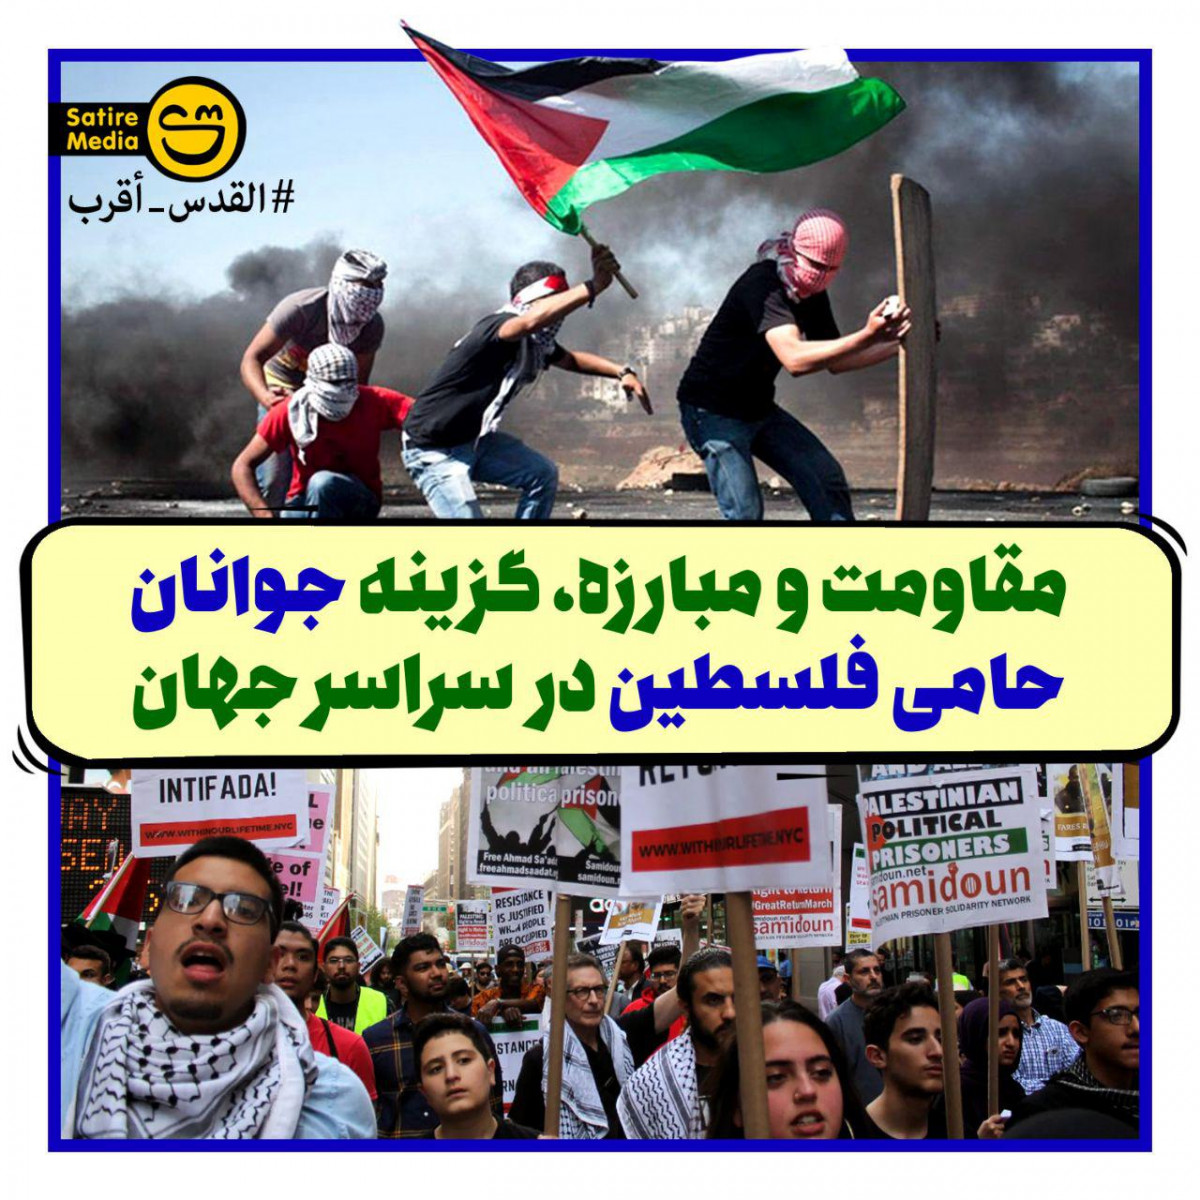 پوستر: مقاومت و مبارزه، گزینه جوانان حامی فلسطین در سراسر جهان